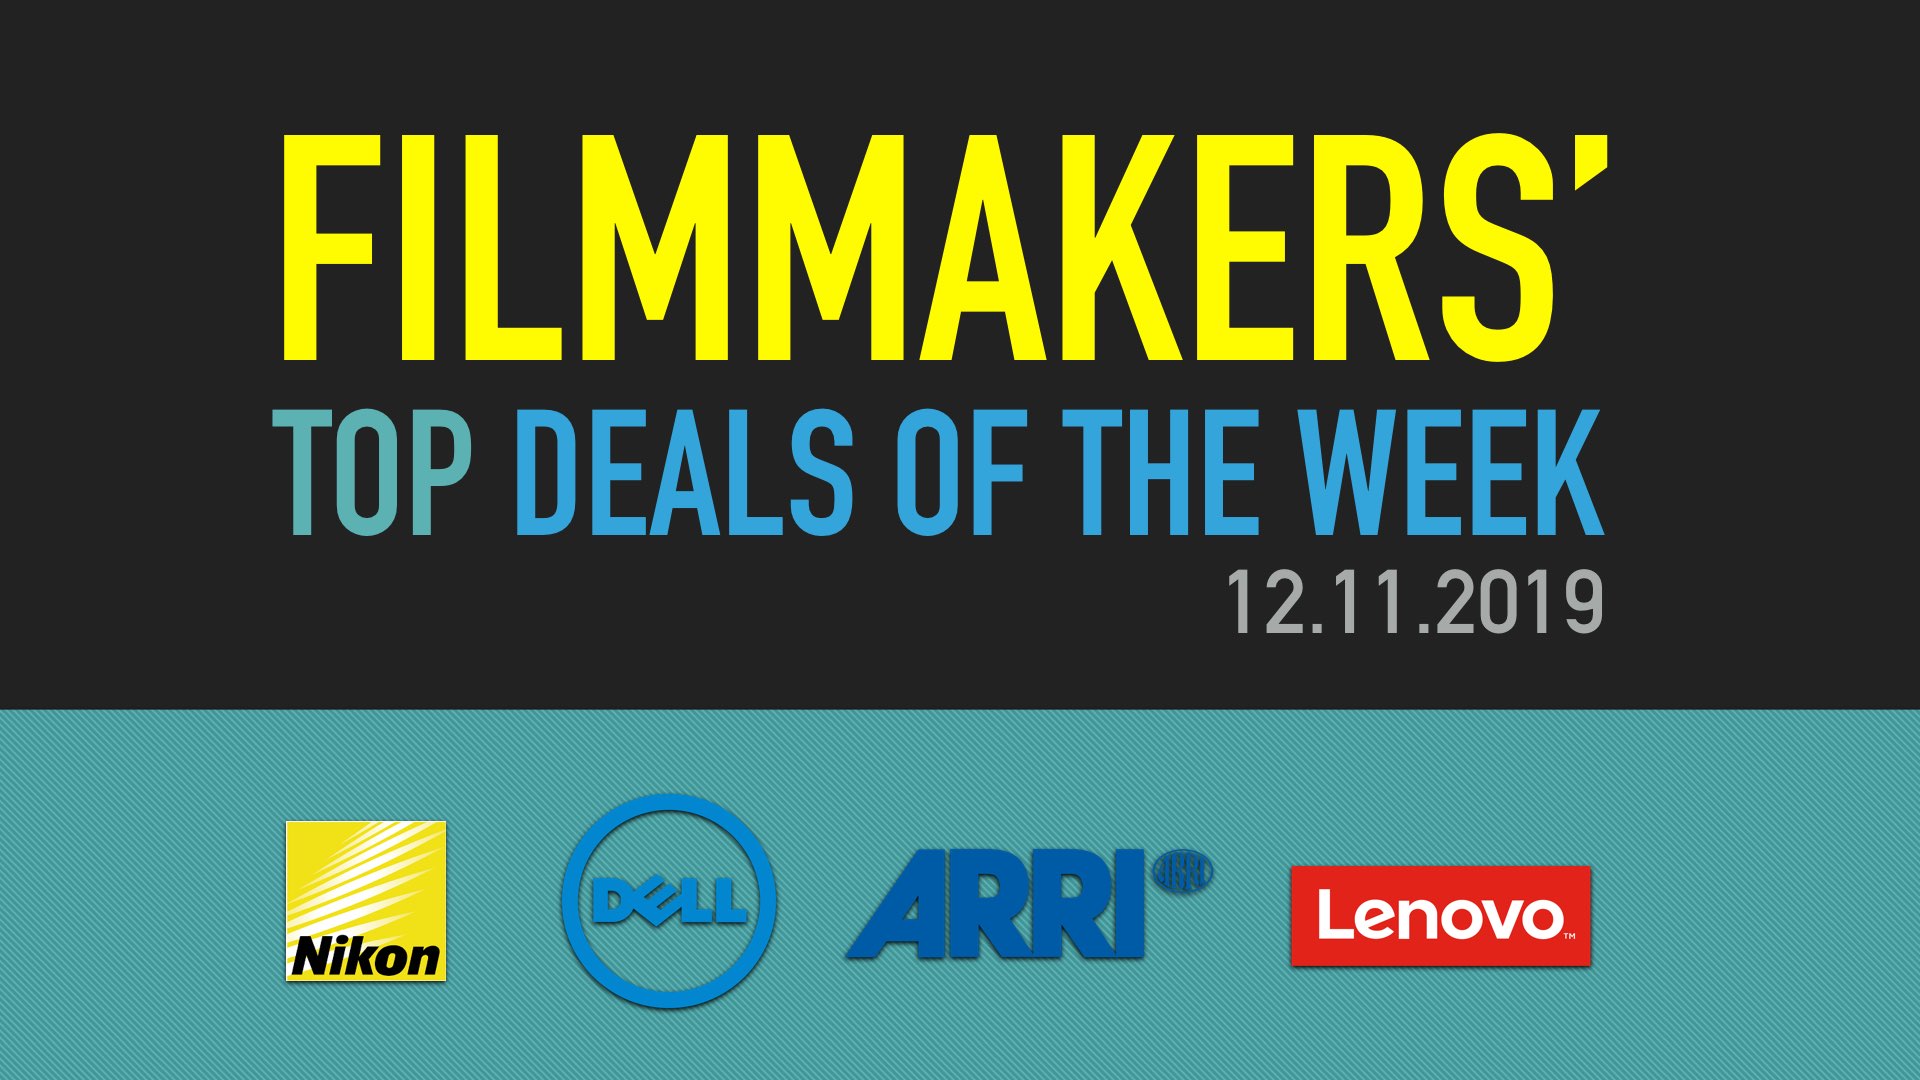 Filmmakers' top deals of the week - 12/11/19